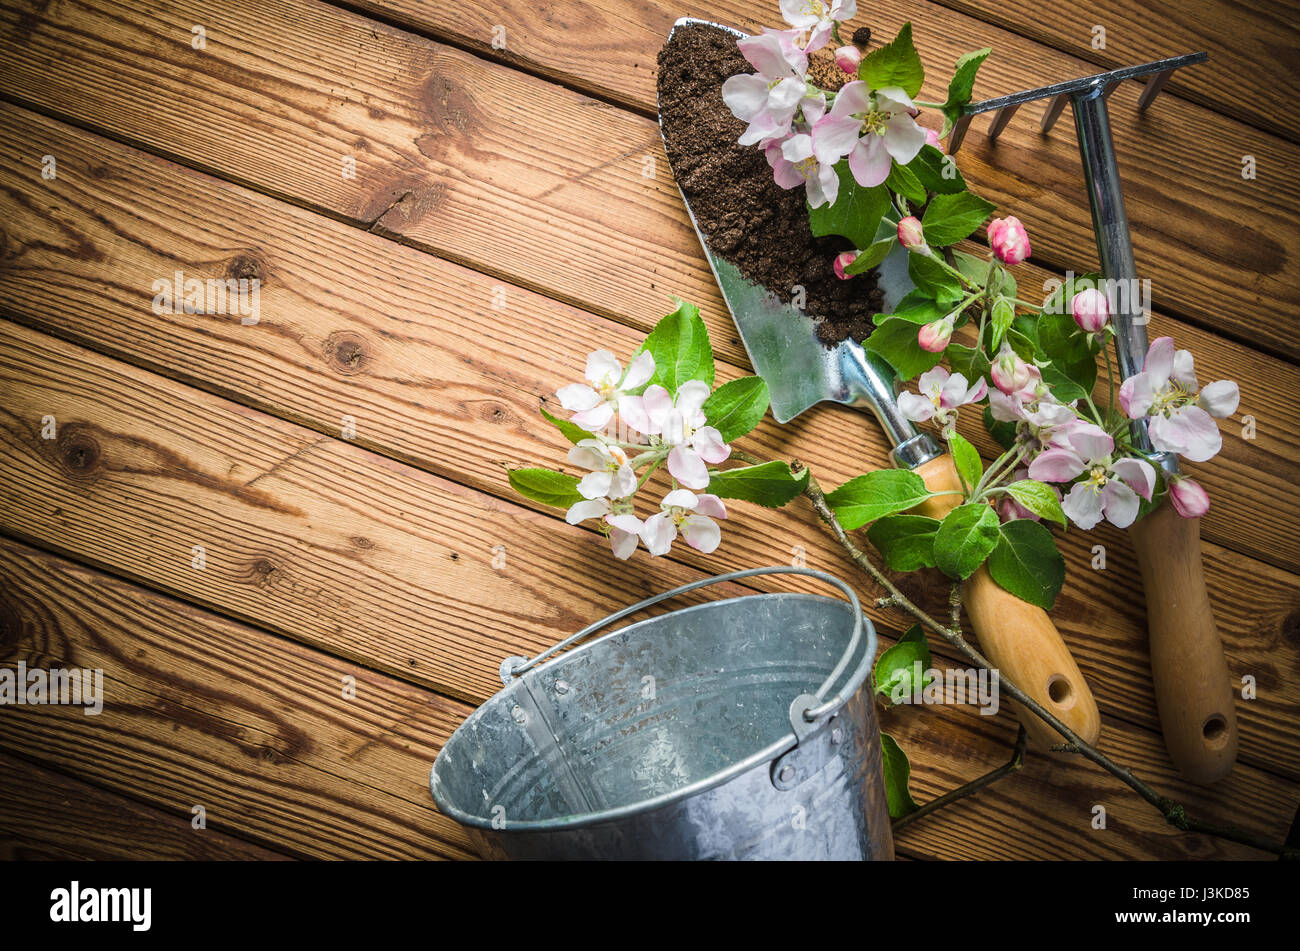 De l'épanouissement de la direction générale et apple outils de jardin sur une surface en bois, close-up Banque D'Images